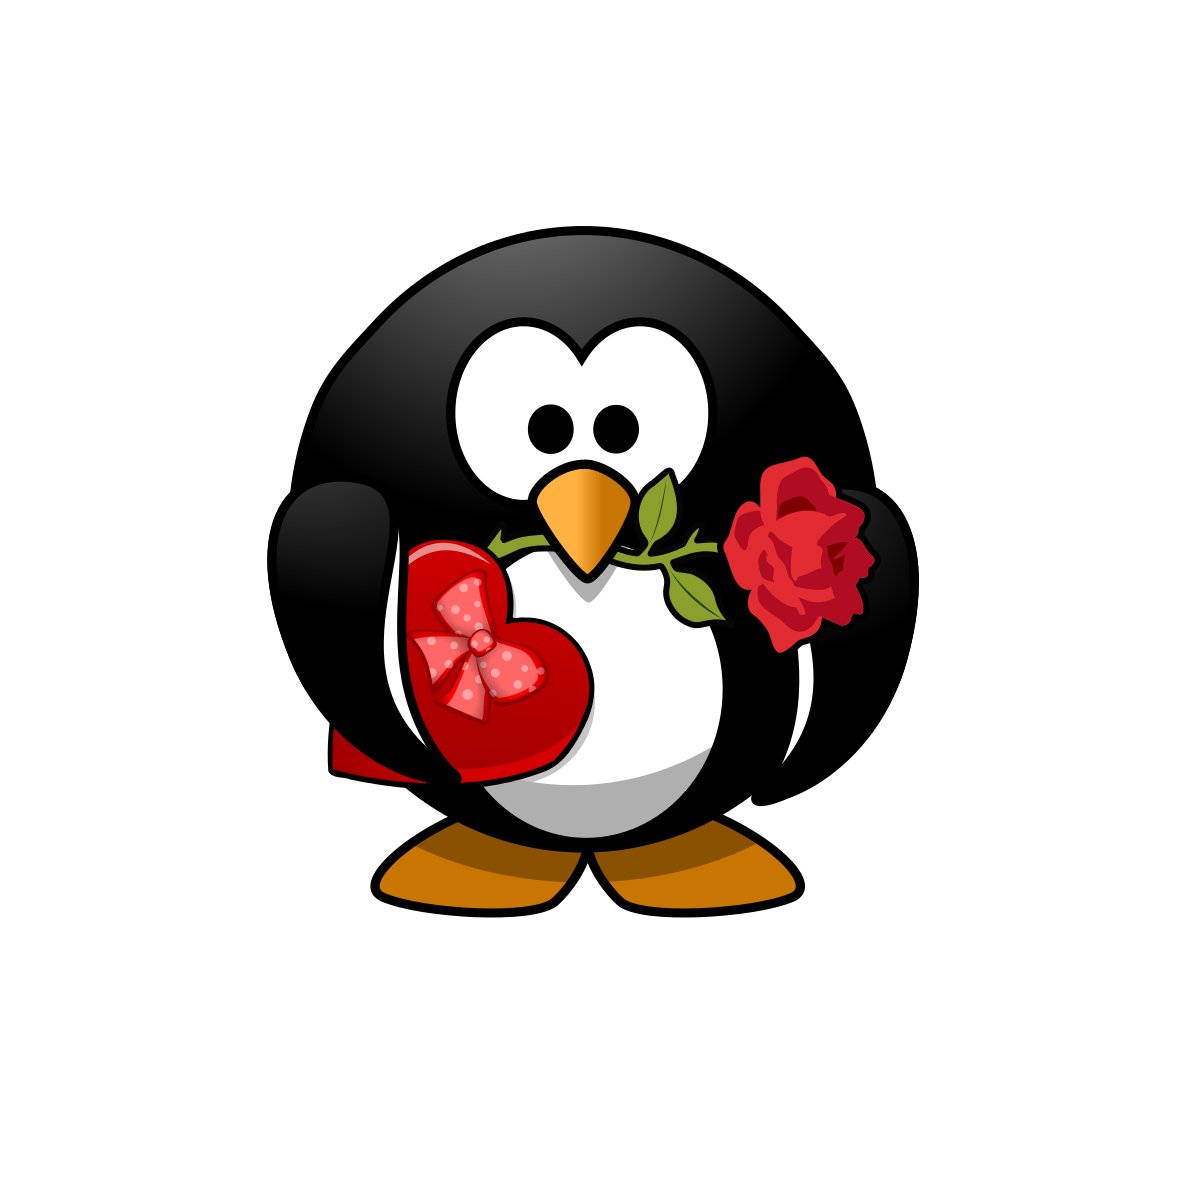 Valentine Pinguin - Small File Clipart by rchanc : Valentine ...